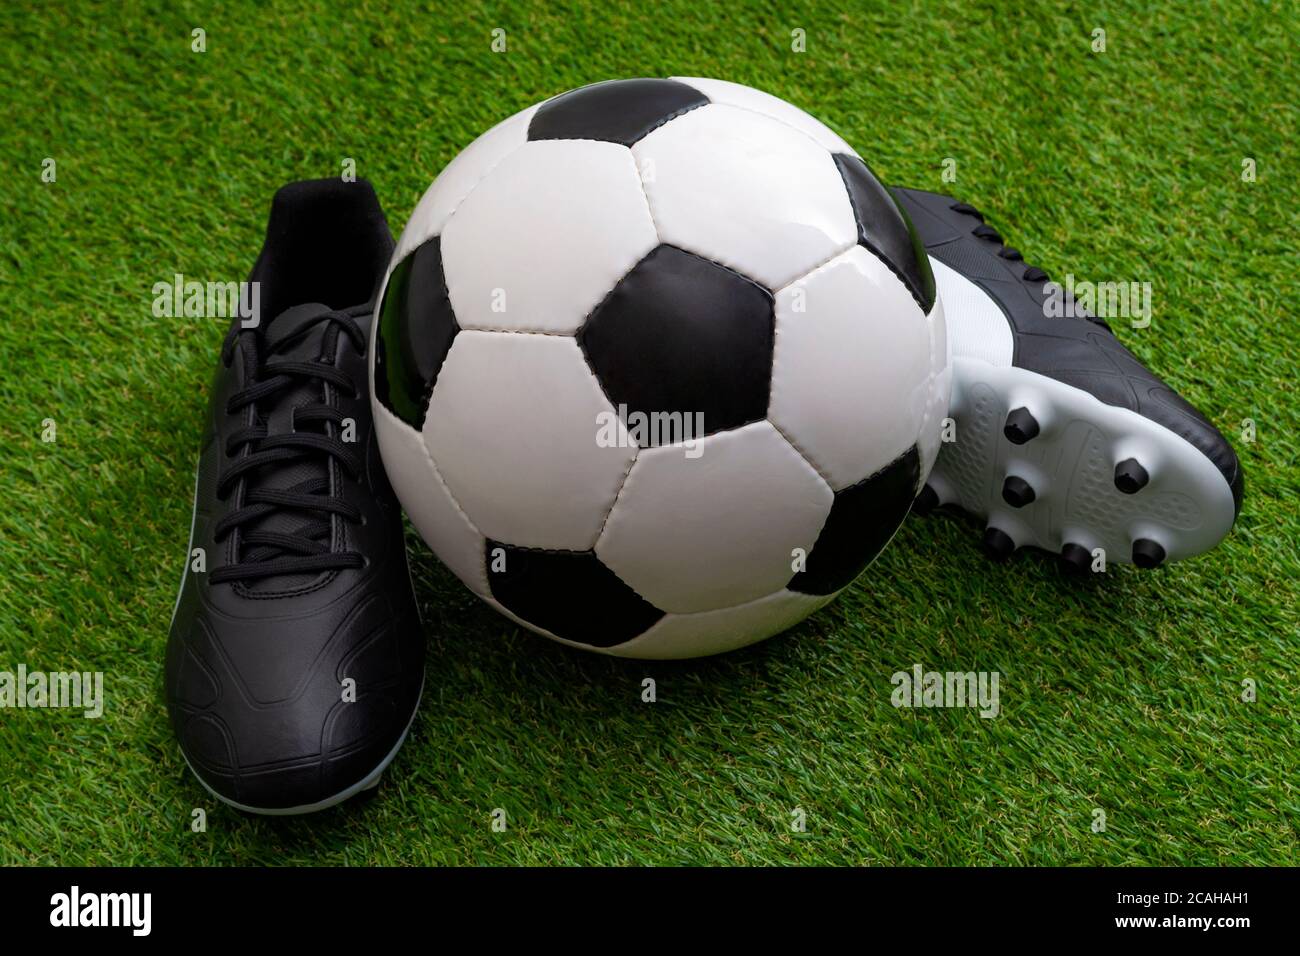 Équipement sportif, compétition d'athlétisme et concept d'événement sportif avec ballon de football, crampons en cuir ou chaussures de football sur gazon vert Banque D'Images